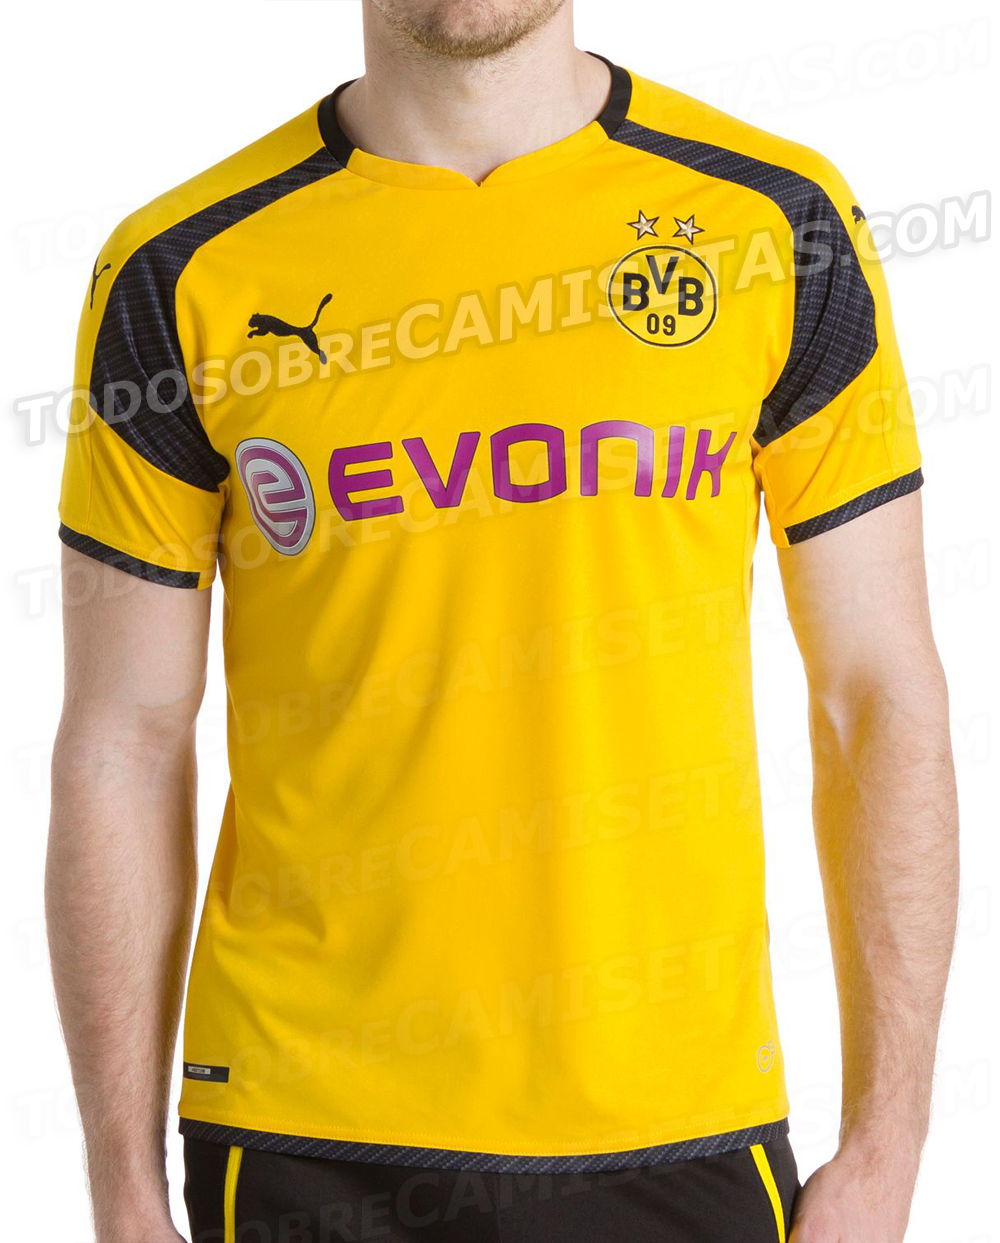 Borussia Dortmund 2016-17 UCL Kit LEAKED